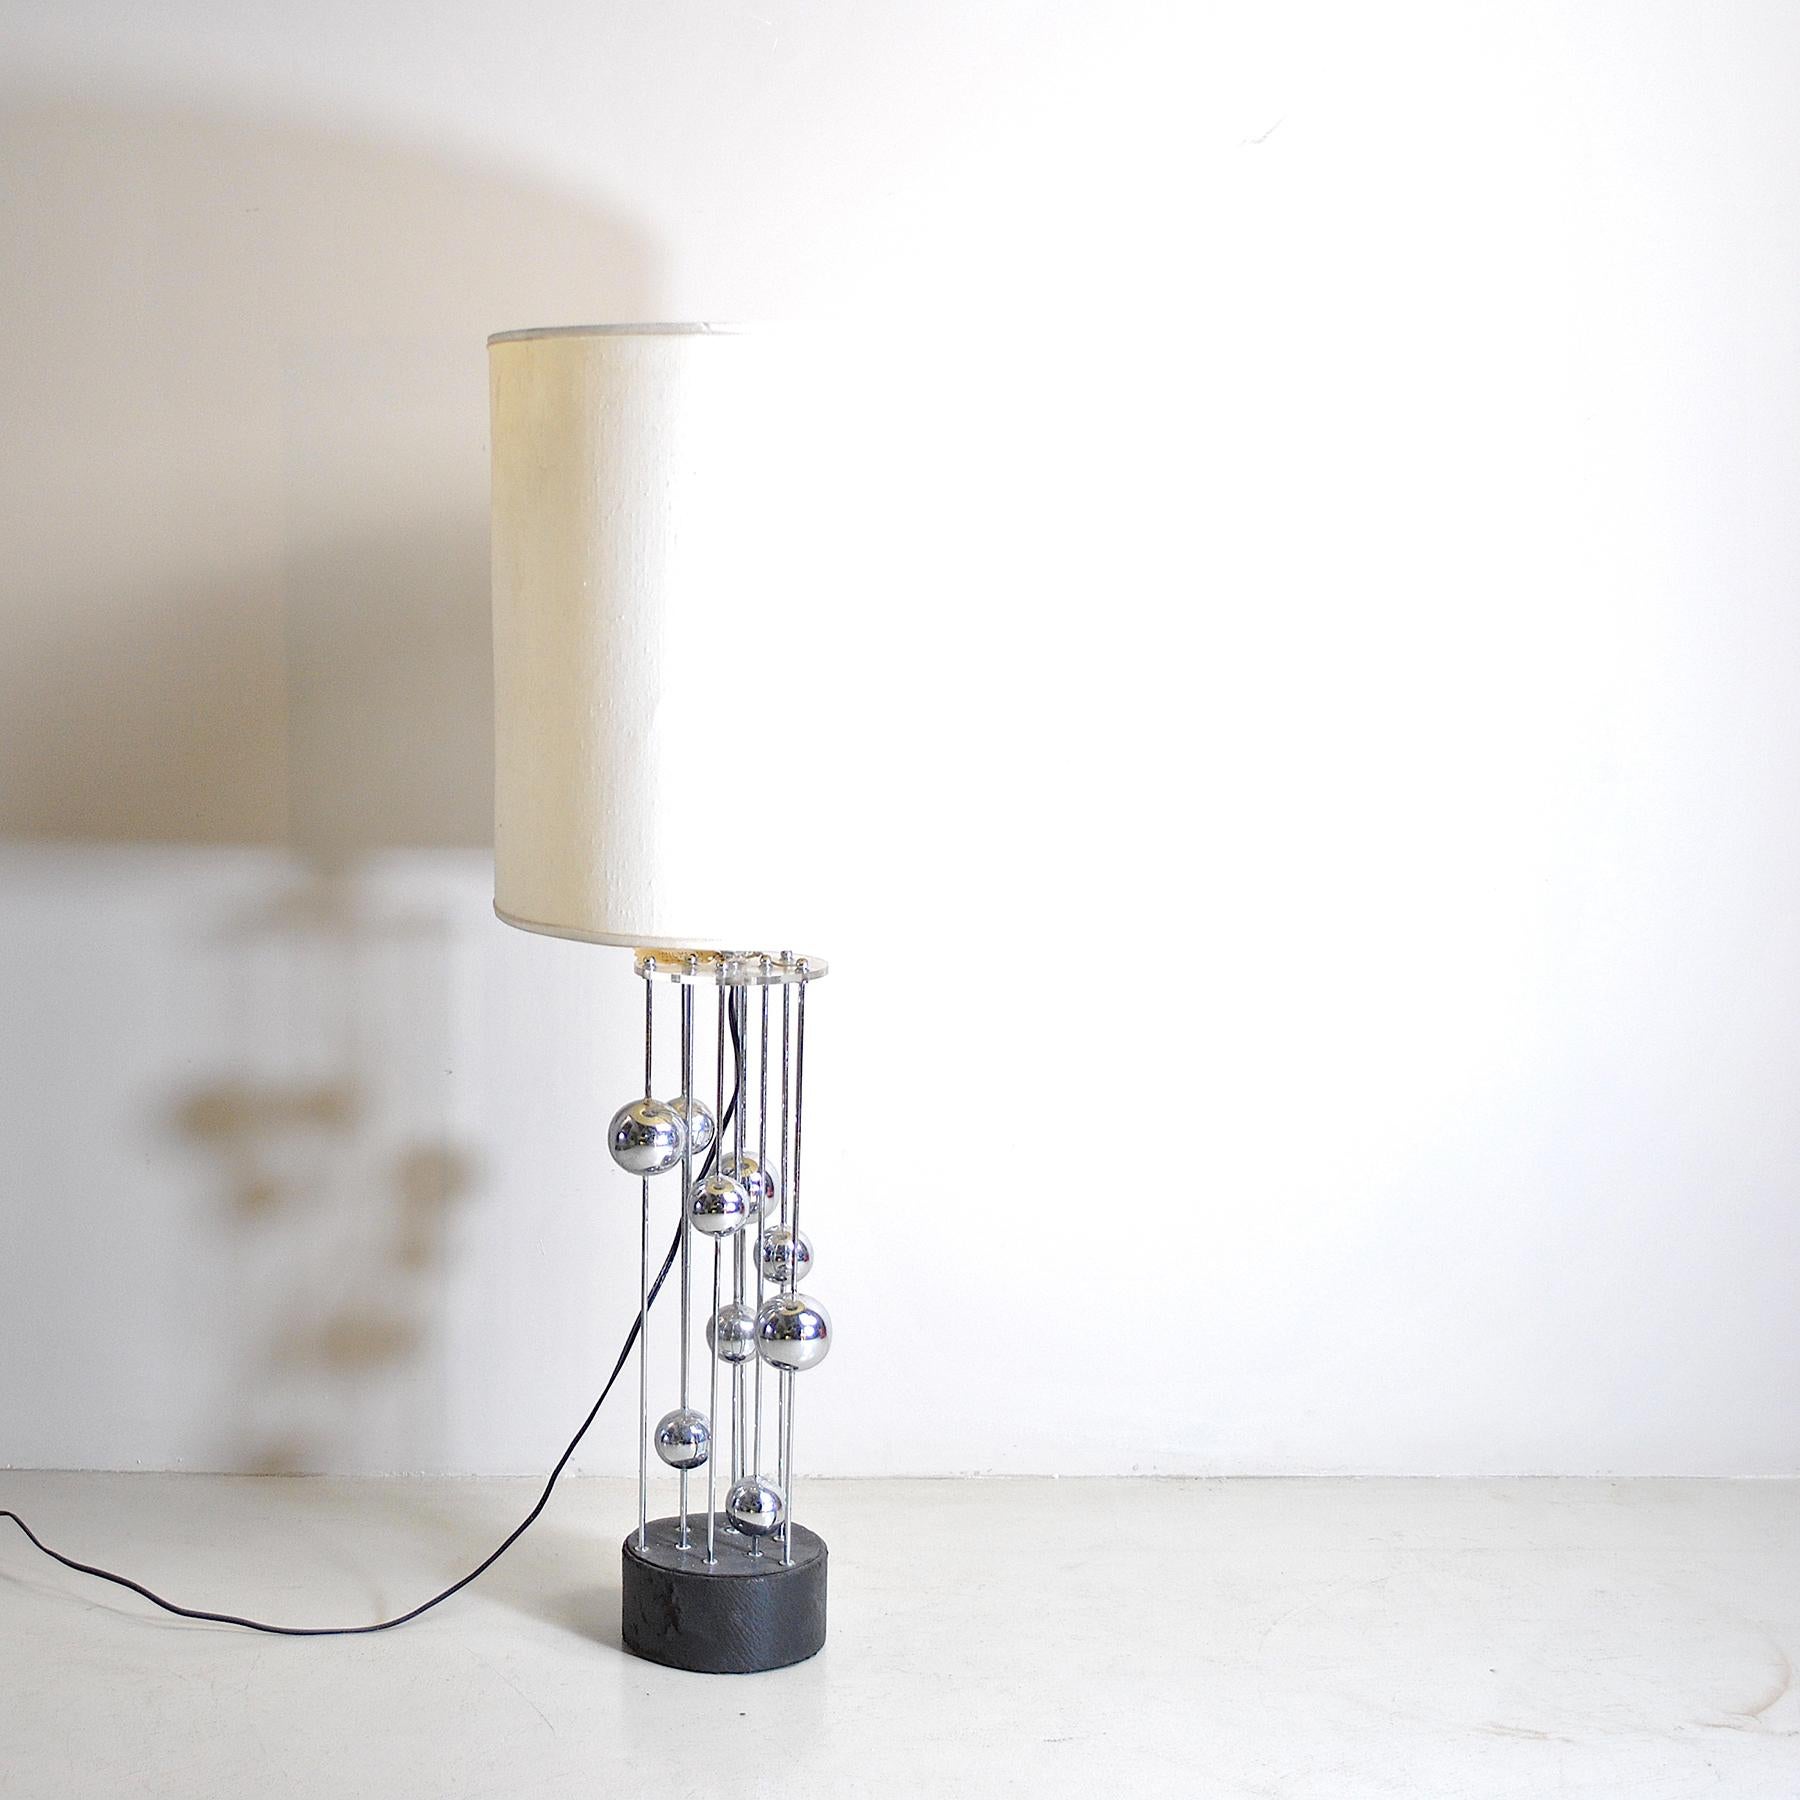 Tischleuchte Atom Design aus den 1970er Jahren aus Edelstahl.

Die Lampe wird ohne den Lampenschirm auf dem Bild verkauft, aber es kann in der Form, Größen und Farben nach Belieben mit einem zusätzlichen Preis angefordert werden.

n.b. die Maße